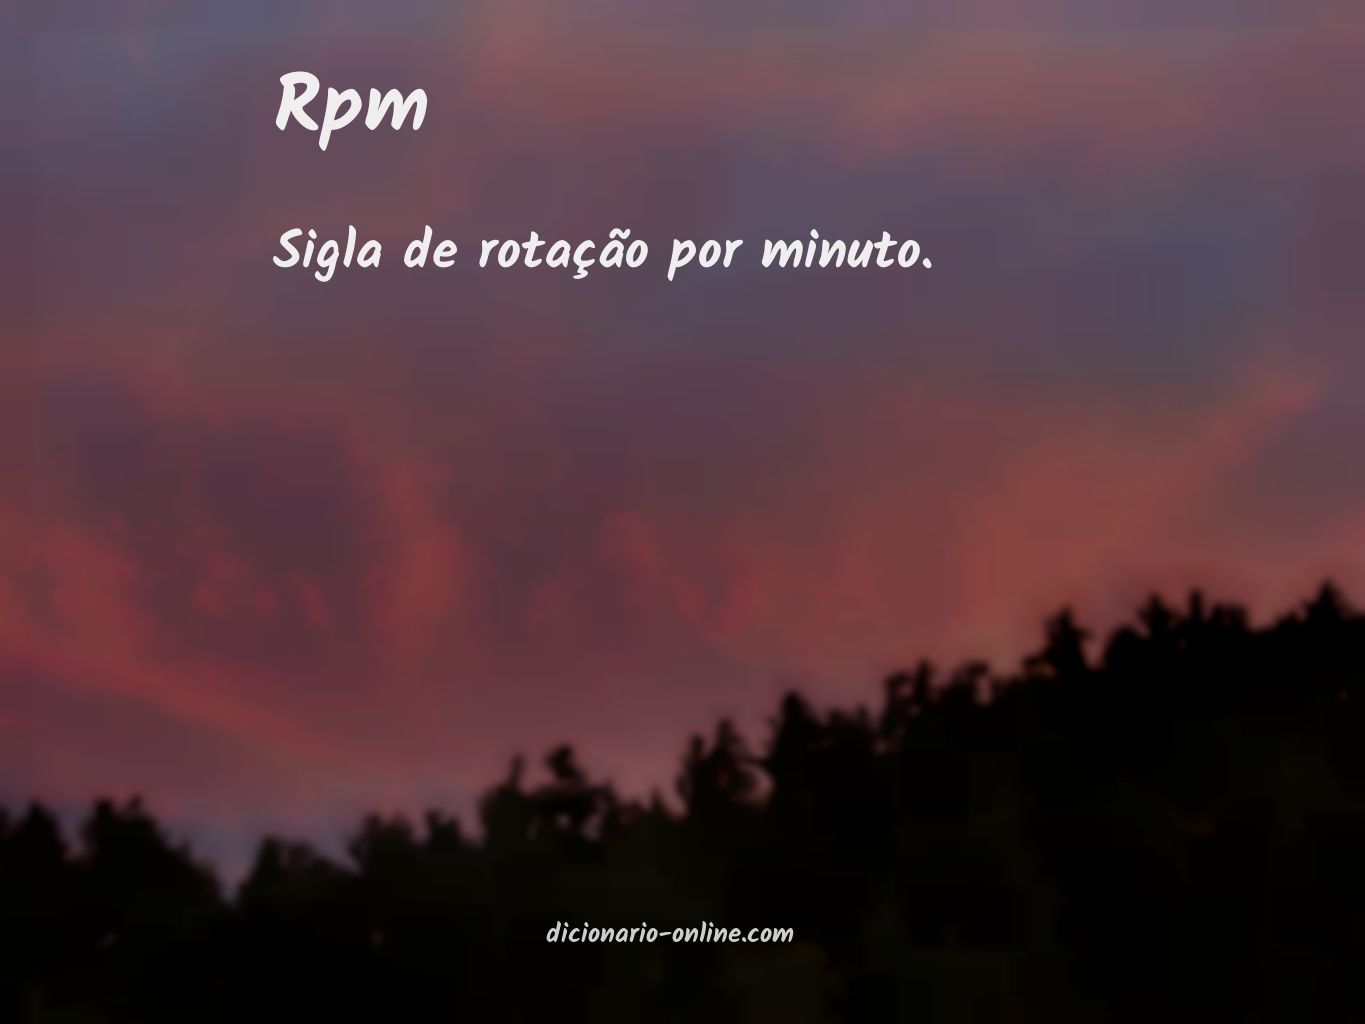 Significado de rpm